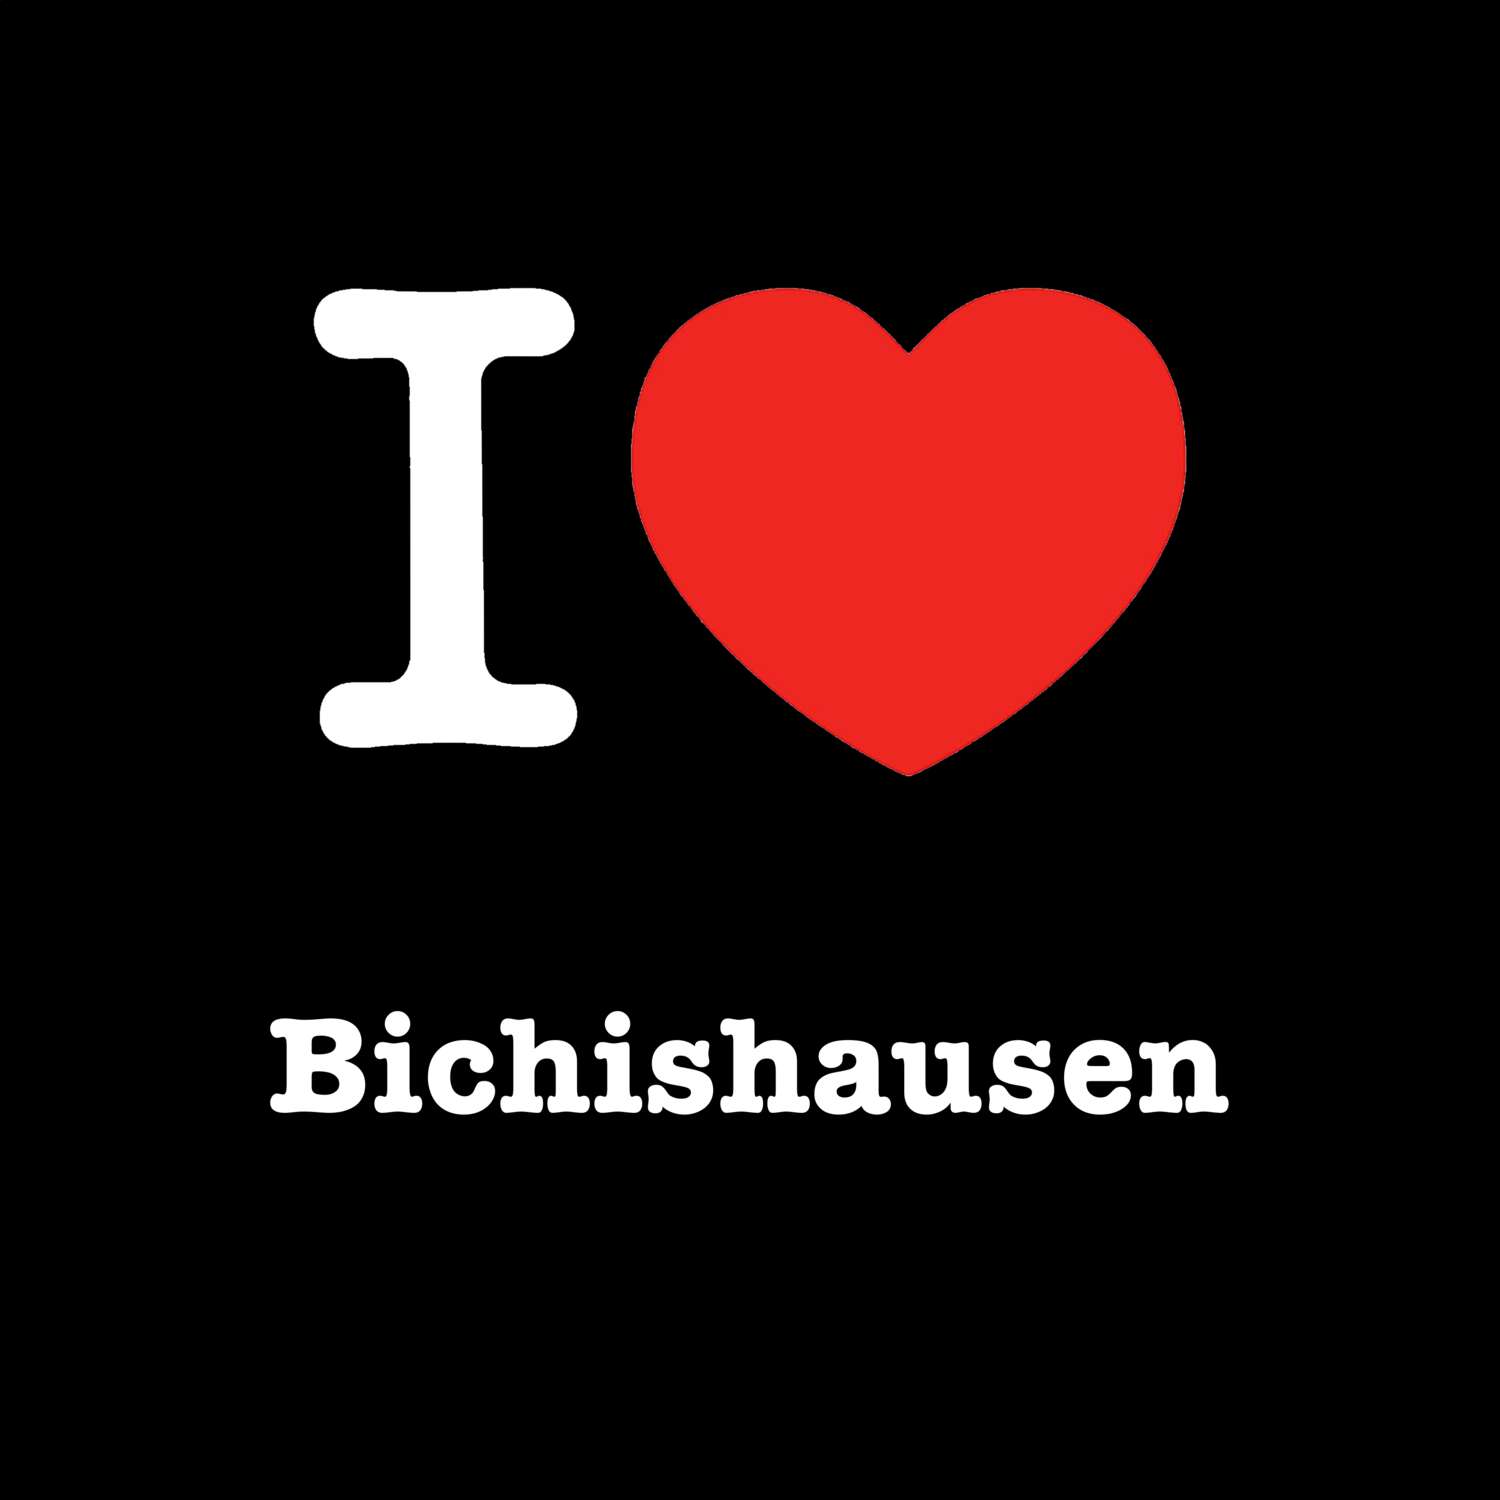 Bichishausen T-Shirt »I love«